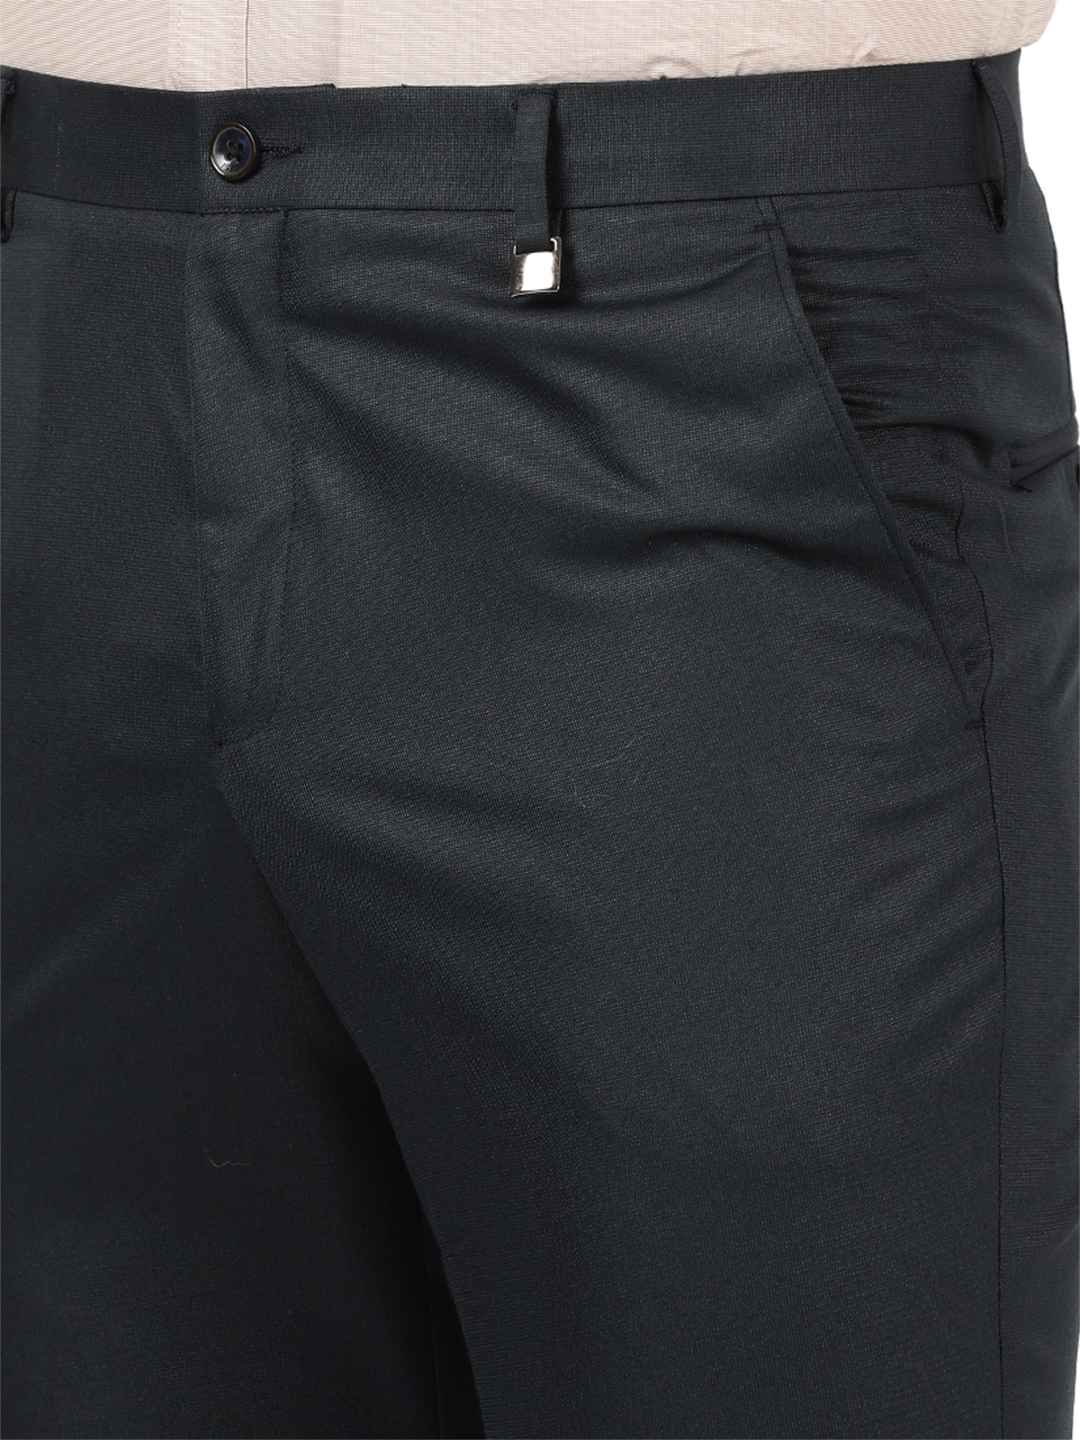 OTTO - Beige Formal Core Trousers - NEWPORT_1 – ottostore.com